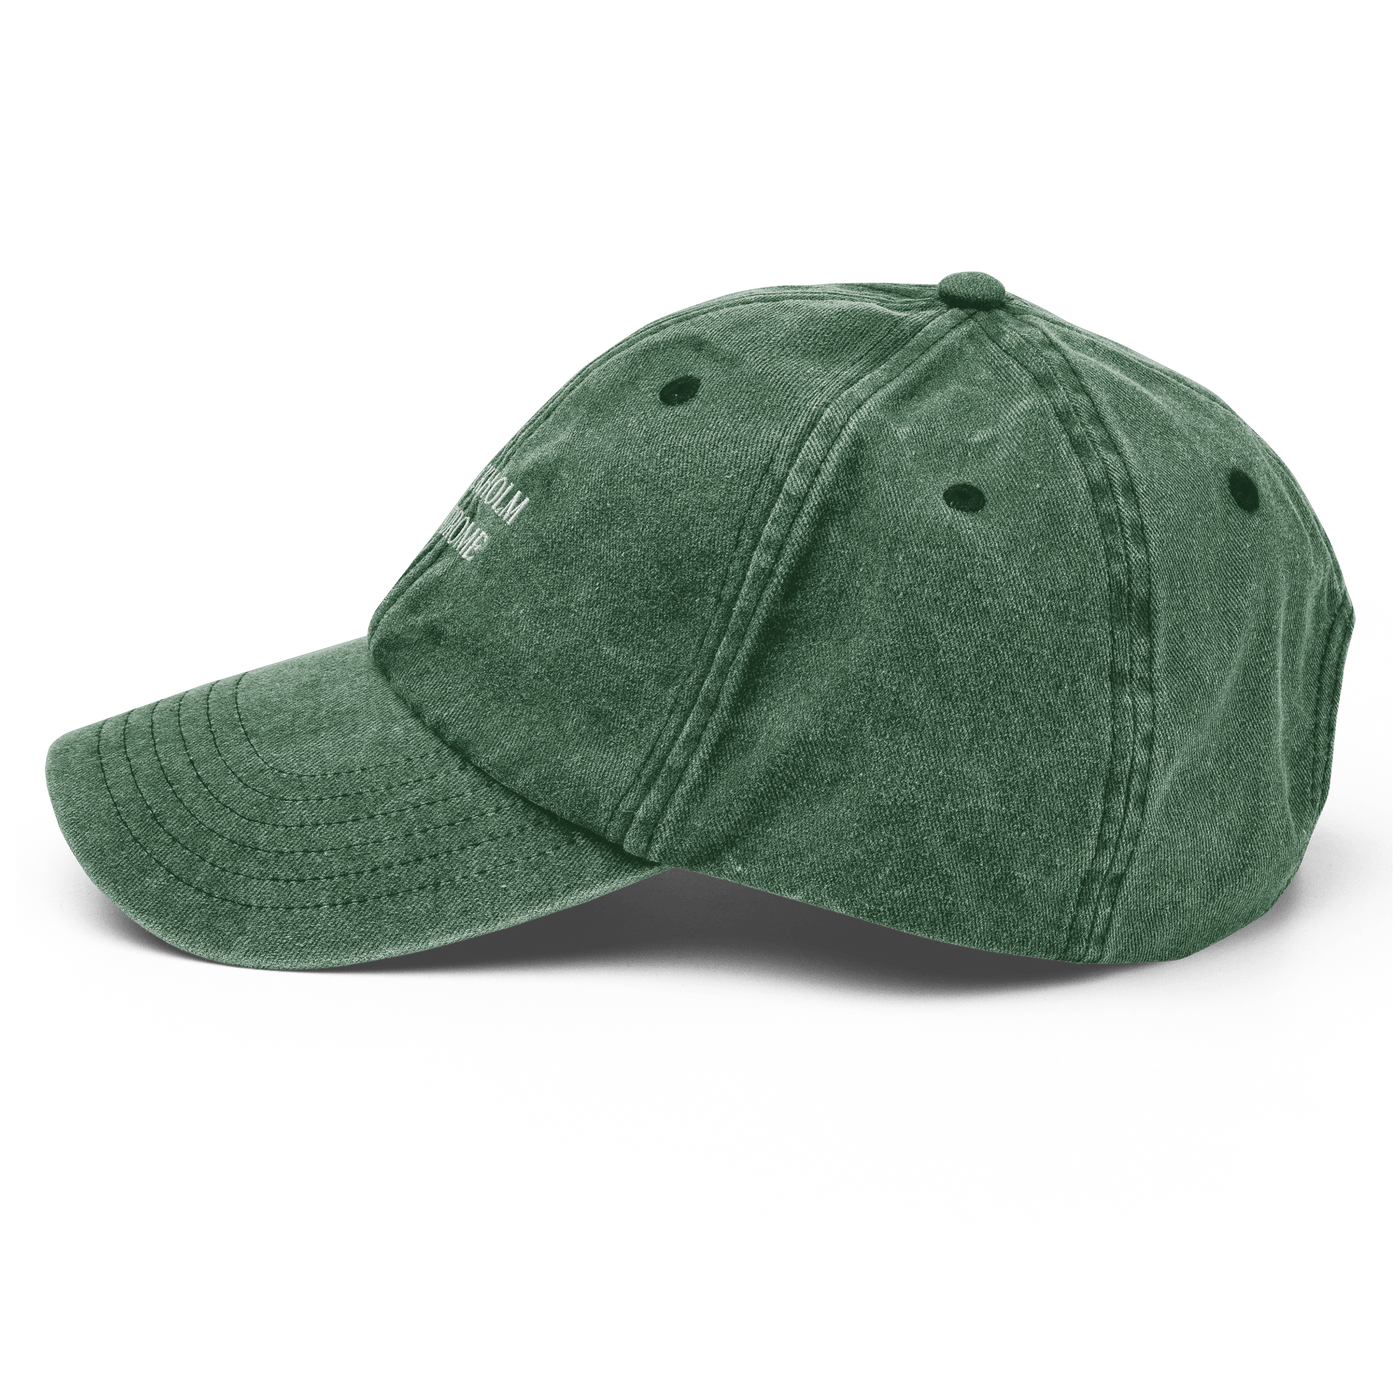 Stockholm Syndrome Vintage Hat - Vintage Bottle Green - - Just Another Cap Store